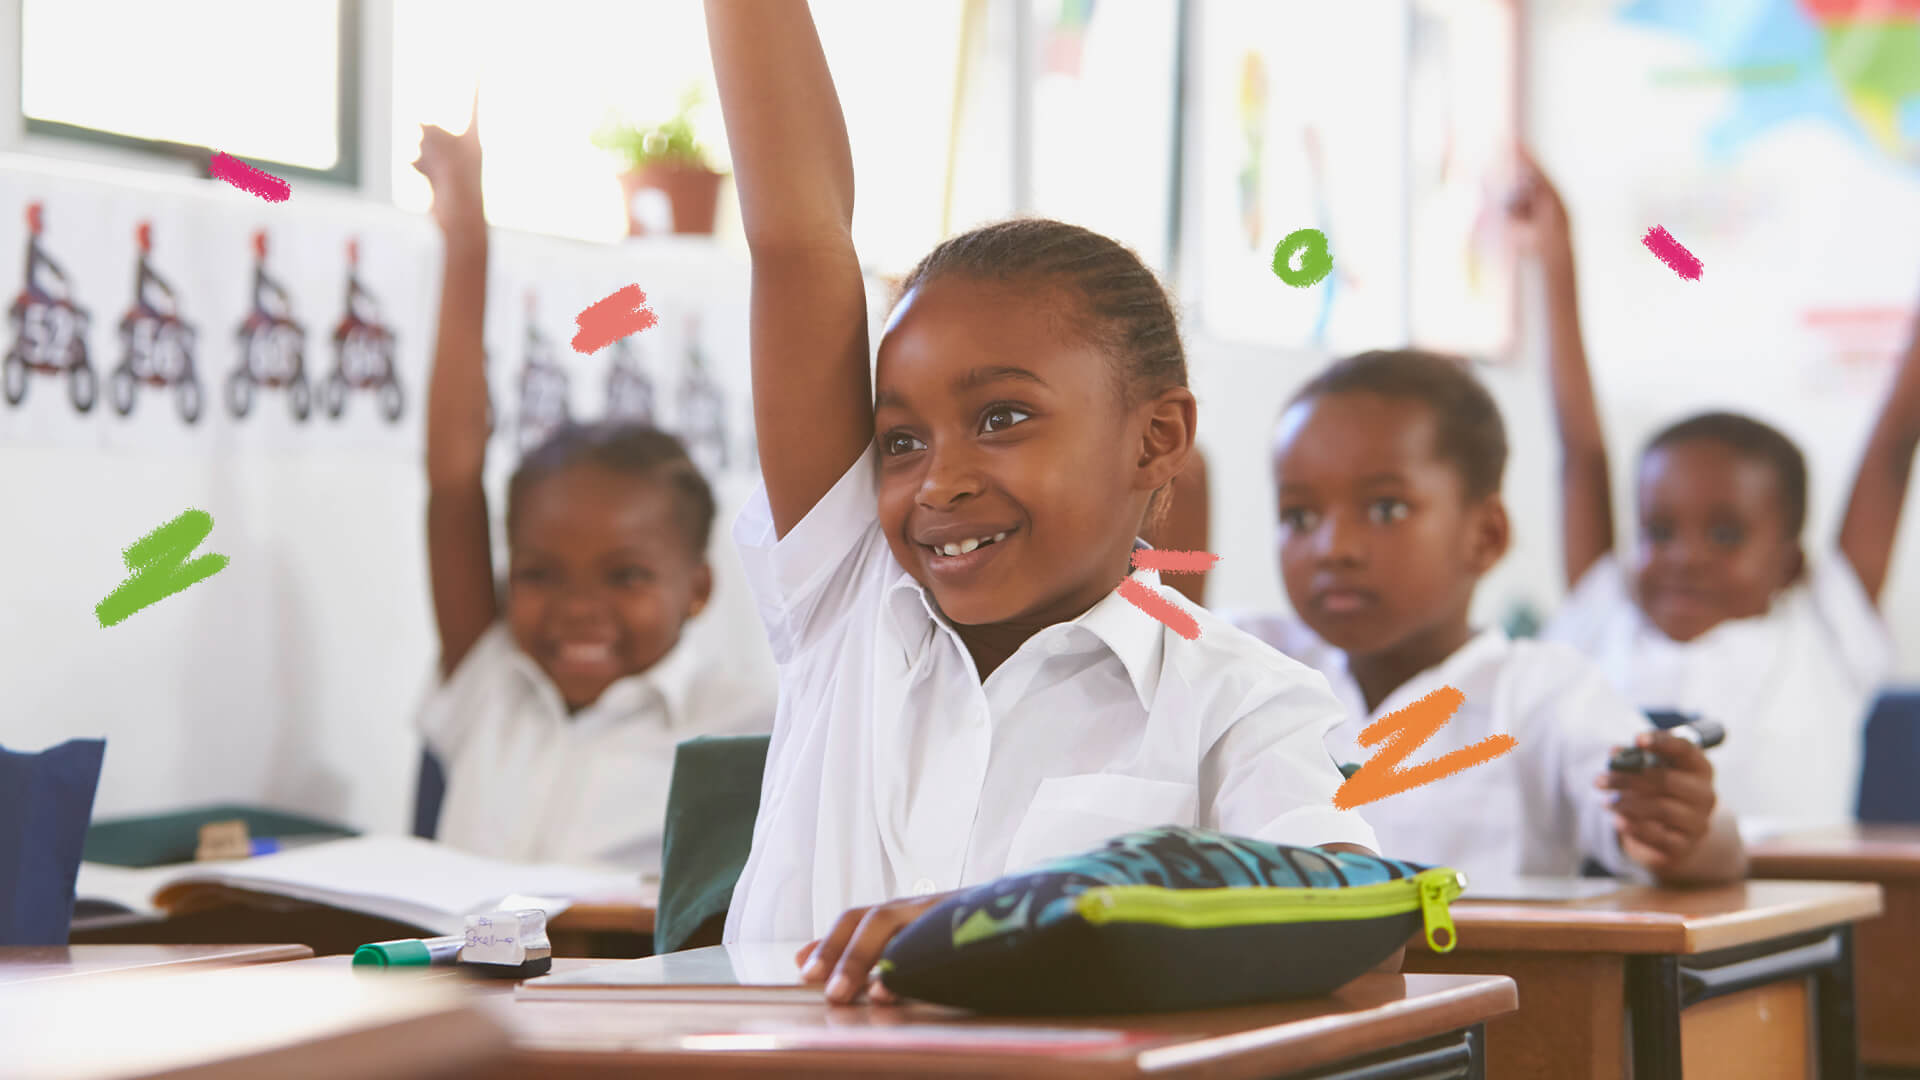 Sorrindo, crianças negras levantam o braço em uma sala de aula.